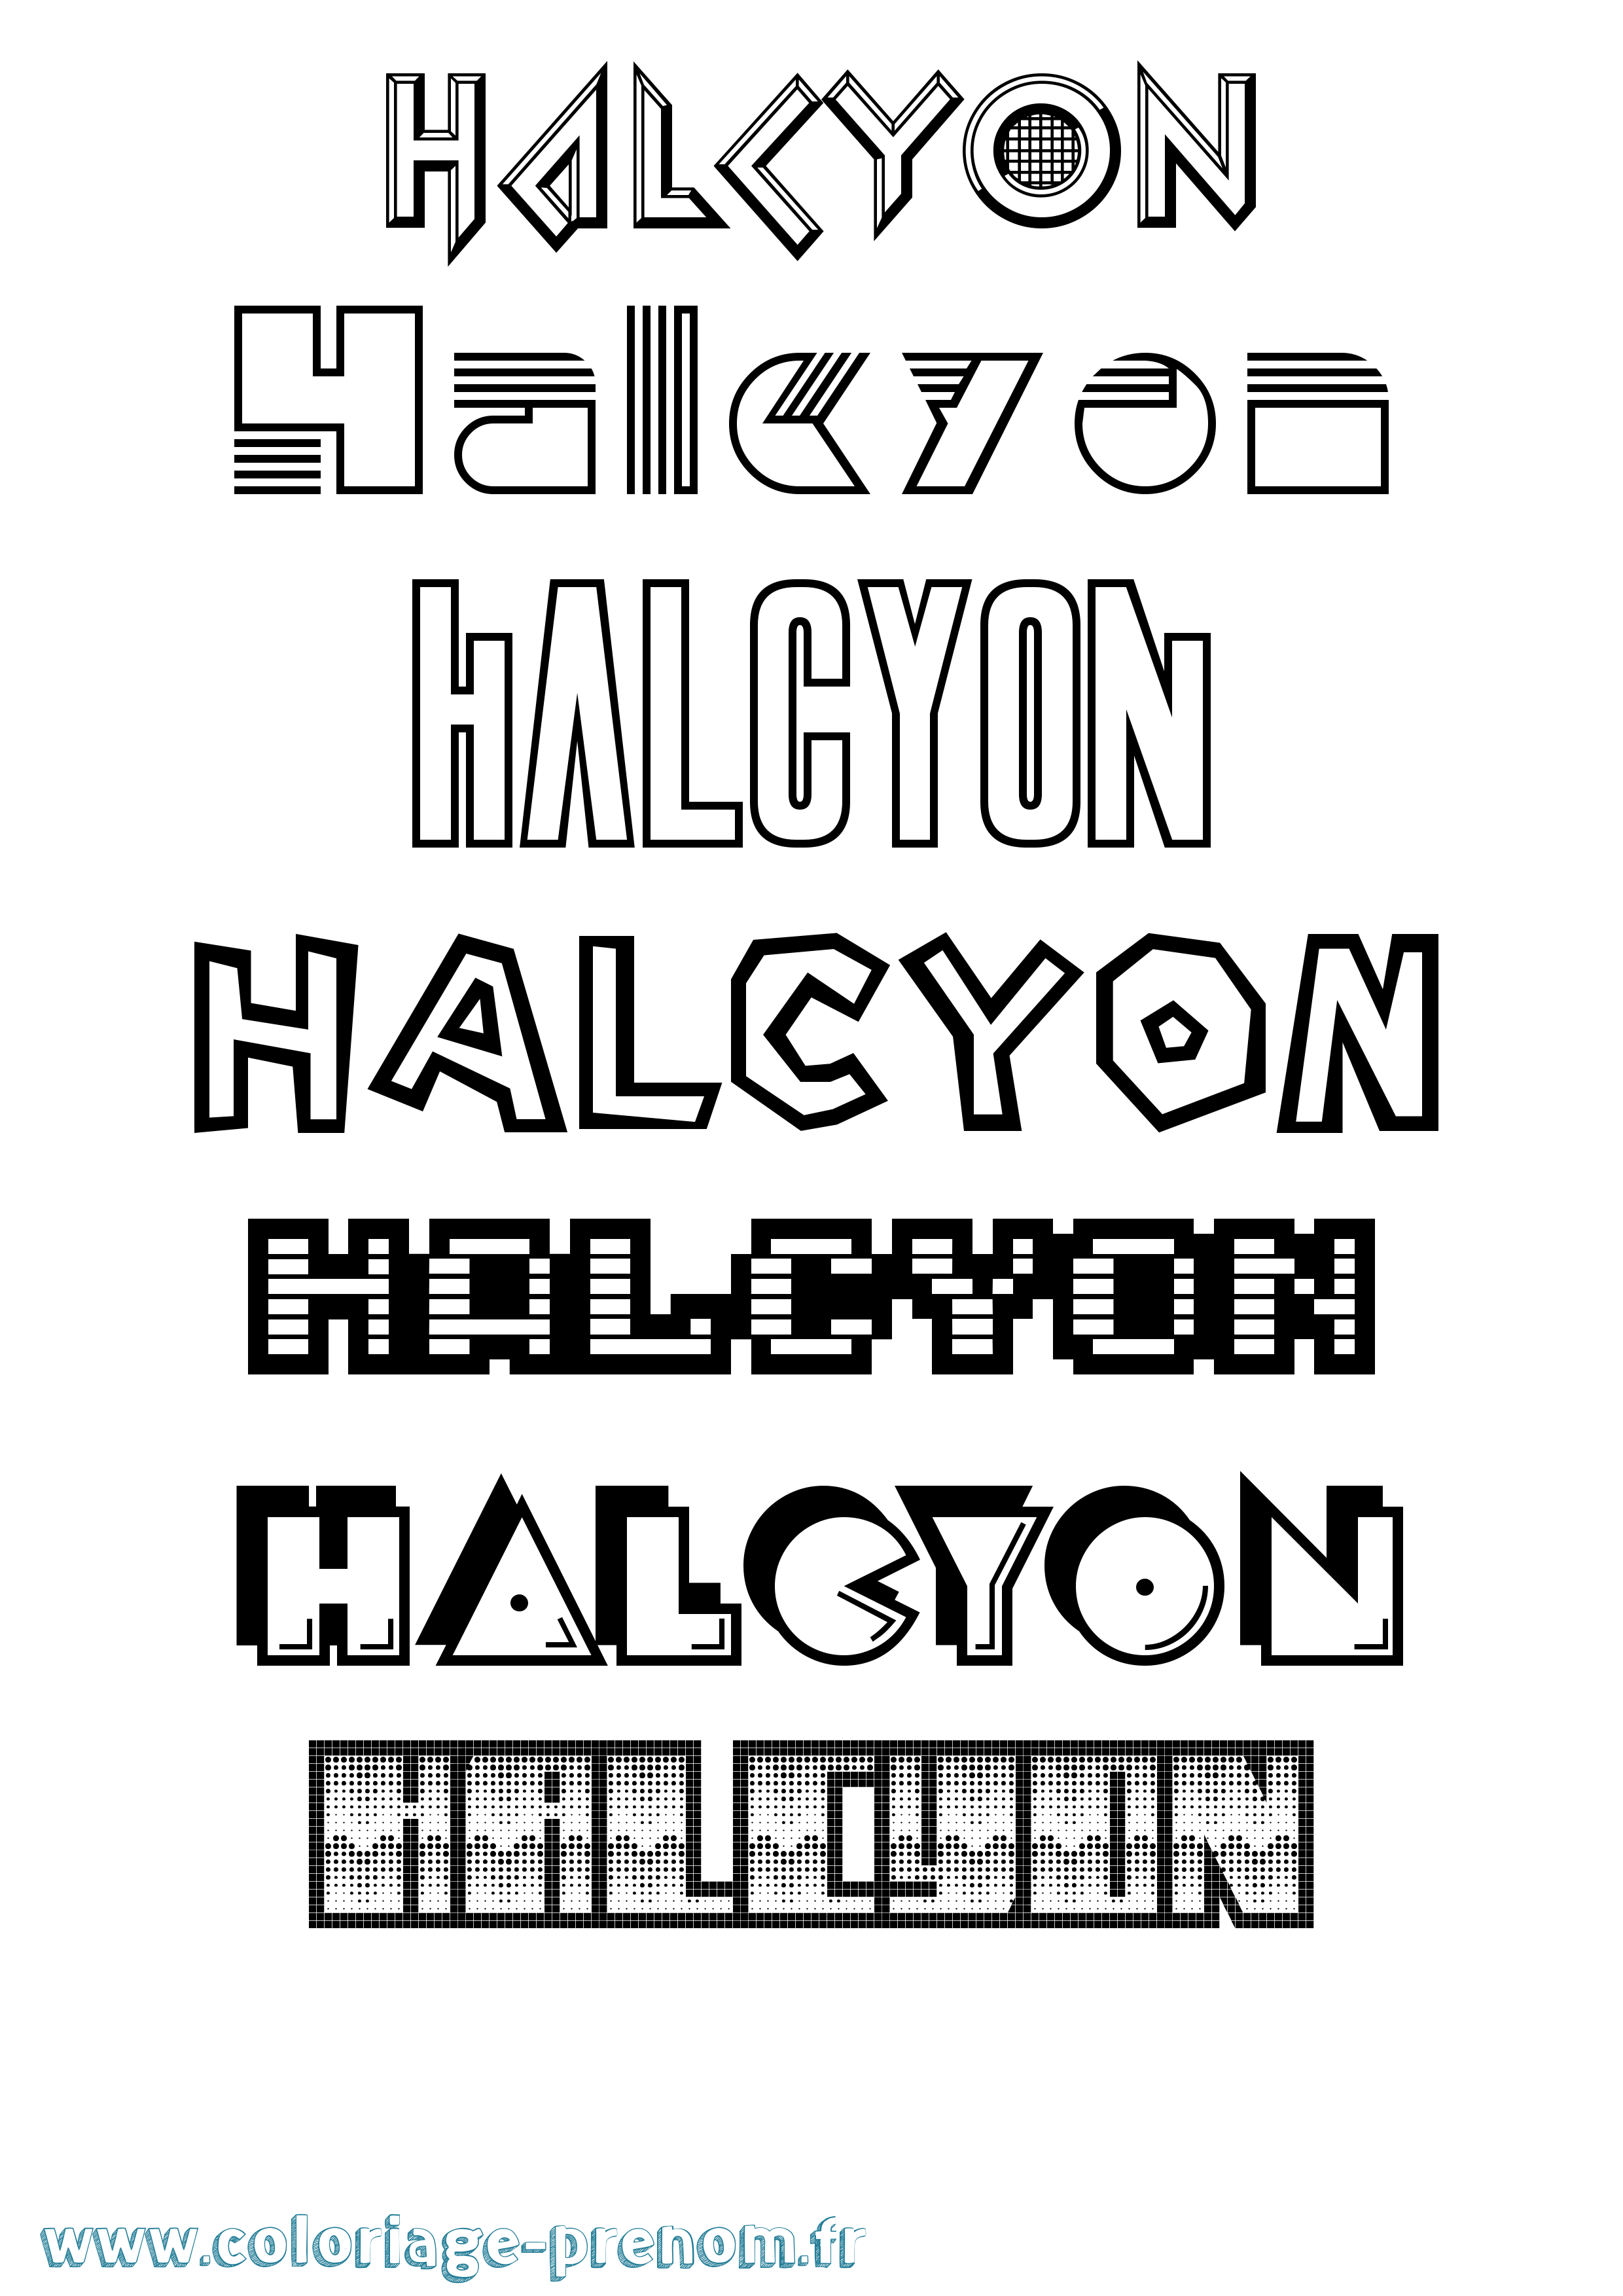 Coloriage prénom Halcyon Jeux Vidéos